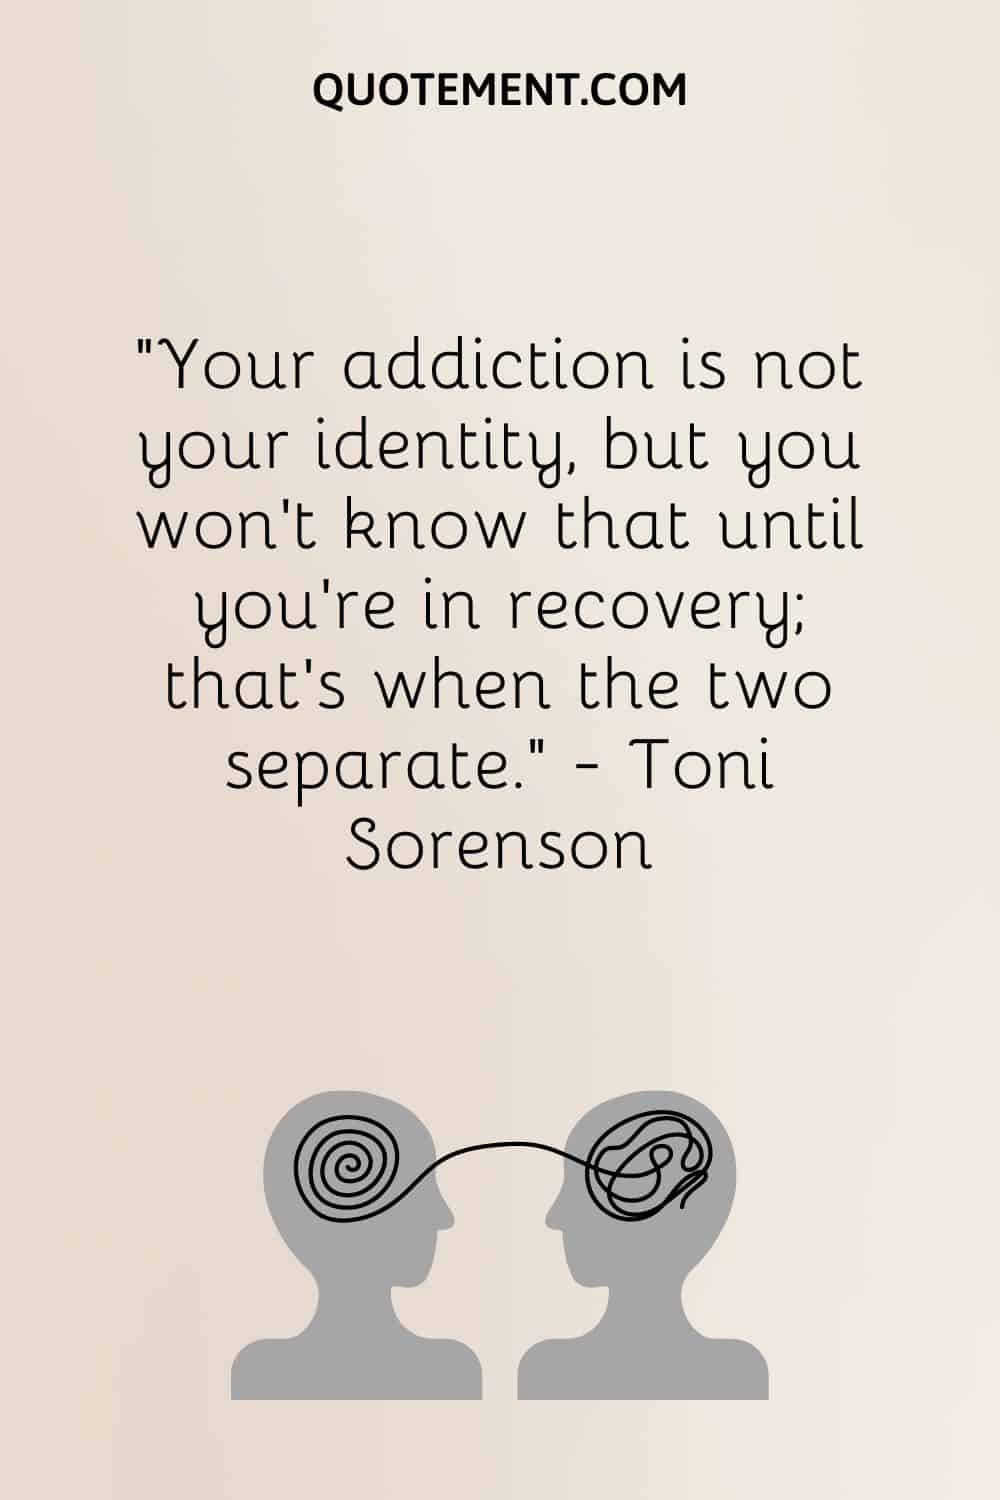 Tu adicción no es tu identidad, pero no lo sabrás hasta que estés en recuperación